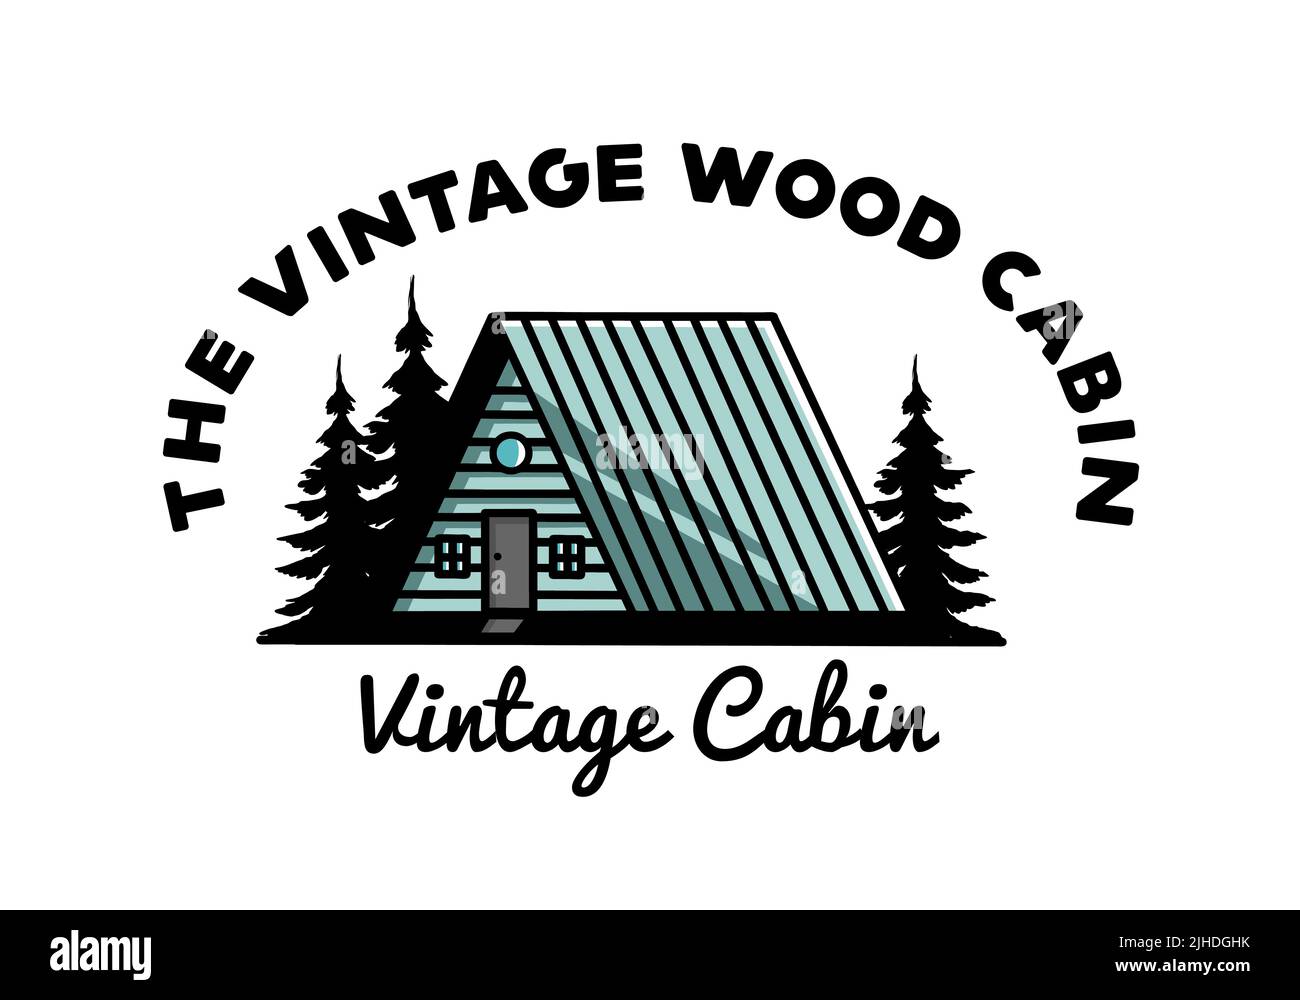 Illustration design of a vintage wood cabin Stock Vector Image & Art ...